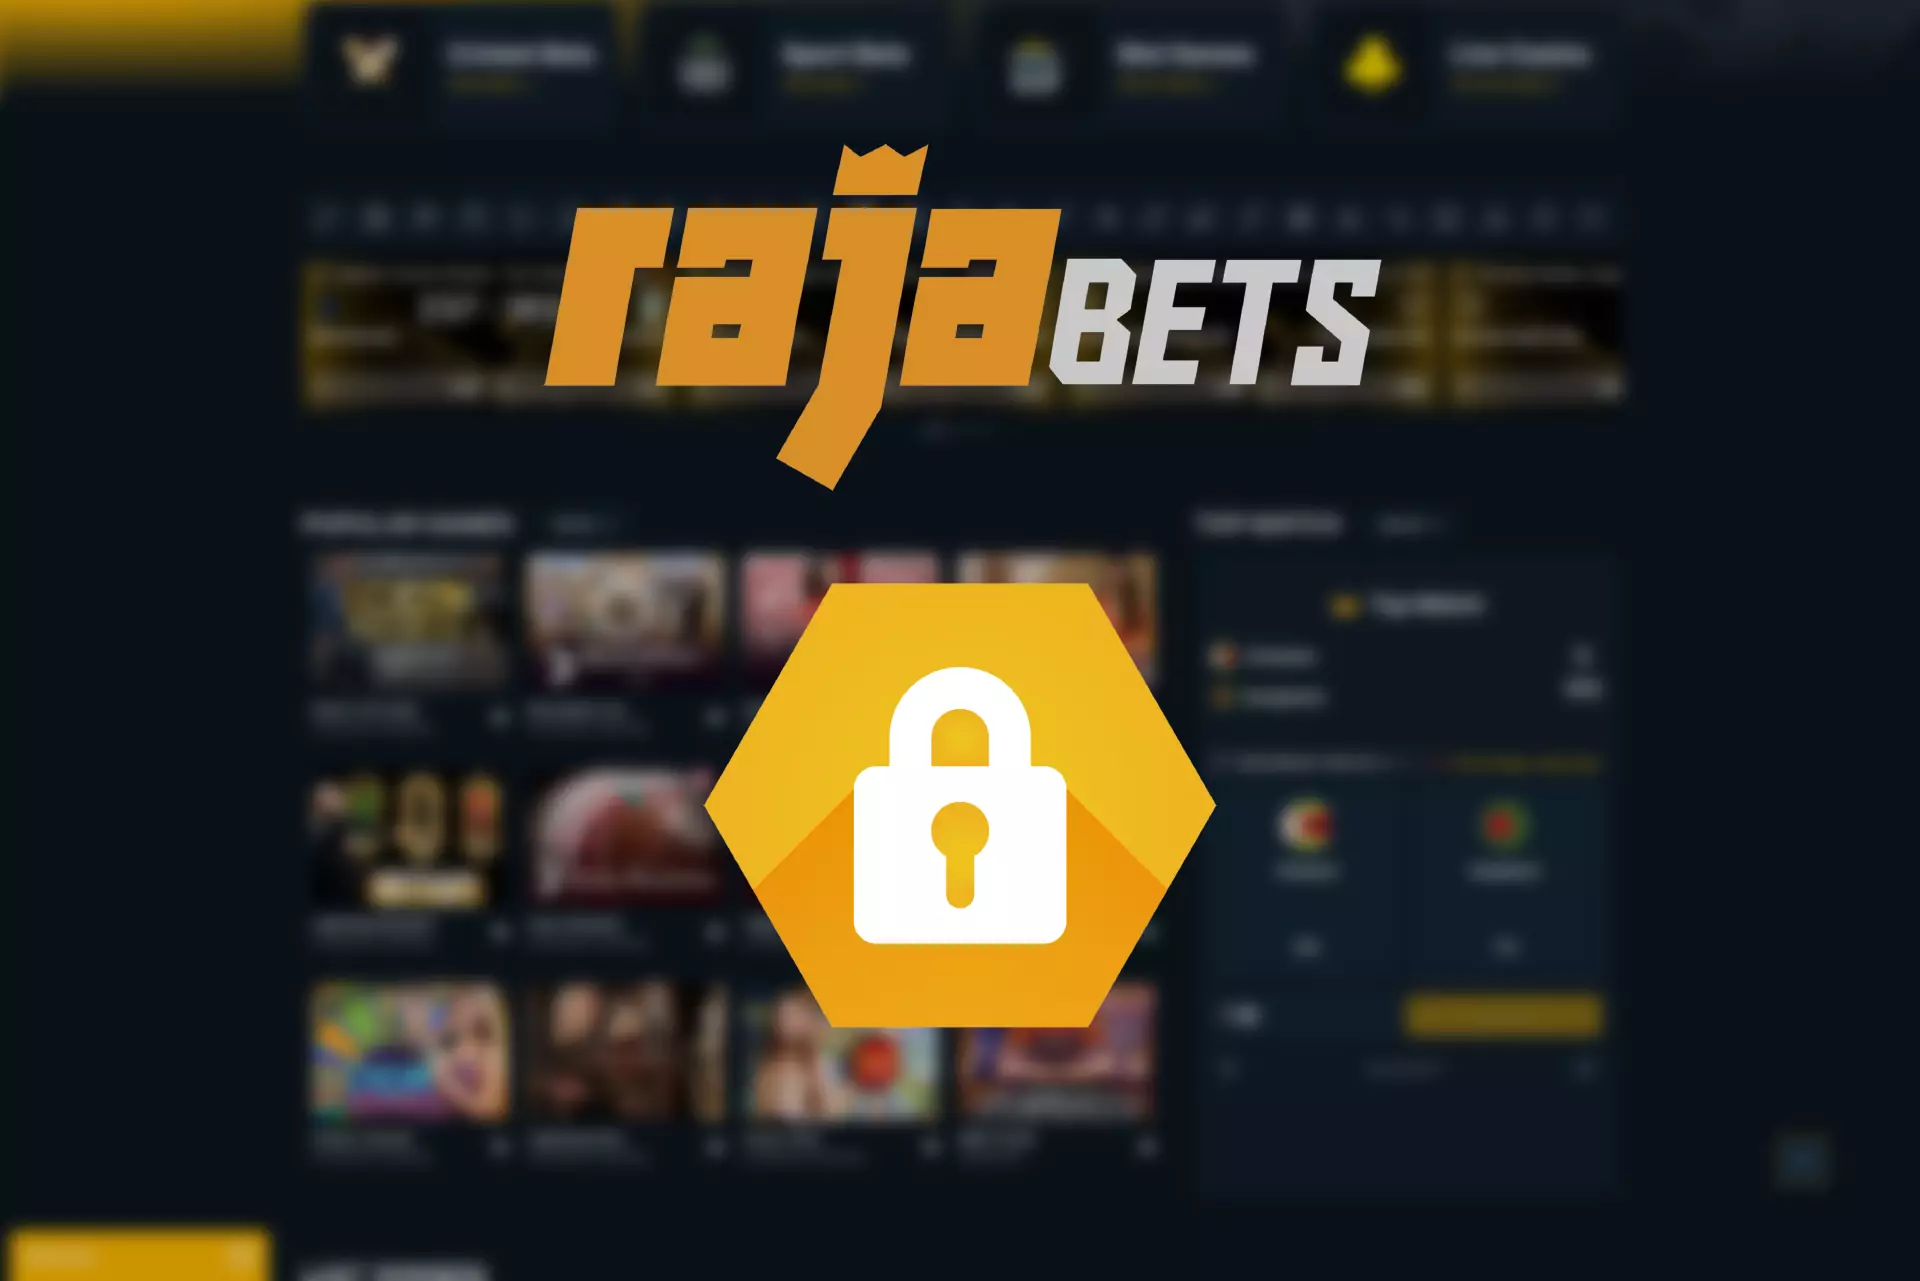 Rajabets एन्क्रिप्शन एल्गोरिदम का उपयोग करके अपने उपयोगकर्ताओं के व्यक्तिगत डेटा की सुरक्षा करता है।